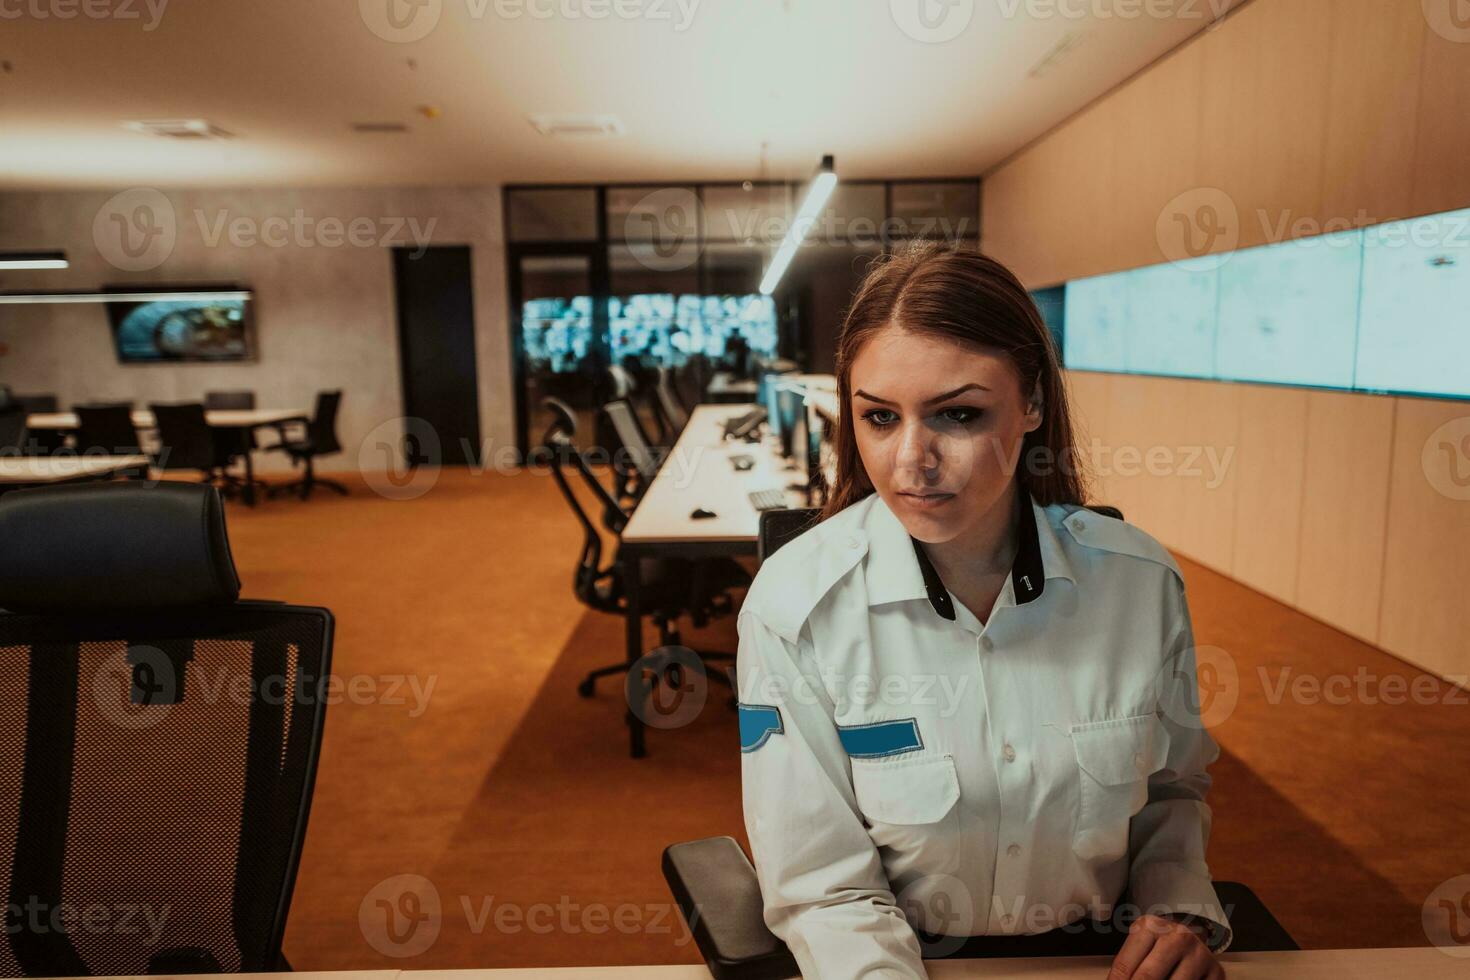 kvinna säkerhet operatör arbetssätt i en data systemet kontrollera rum kontor teknisk operatör arbetssätt på arbetsstation med flera olika skärmar, säkerhet vakt arbetssätt på flera olika monitorer foto